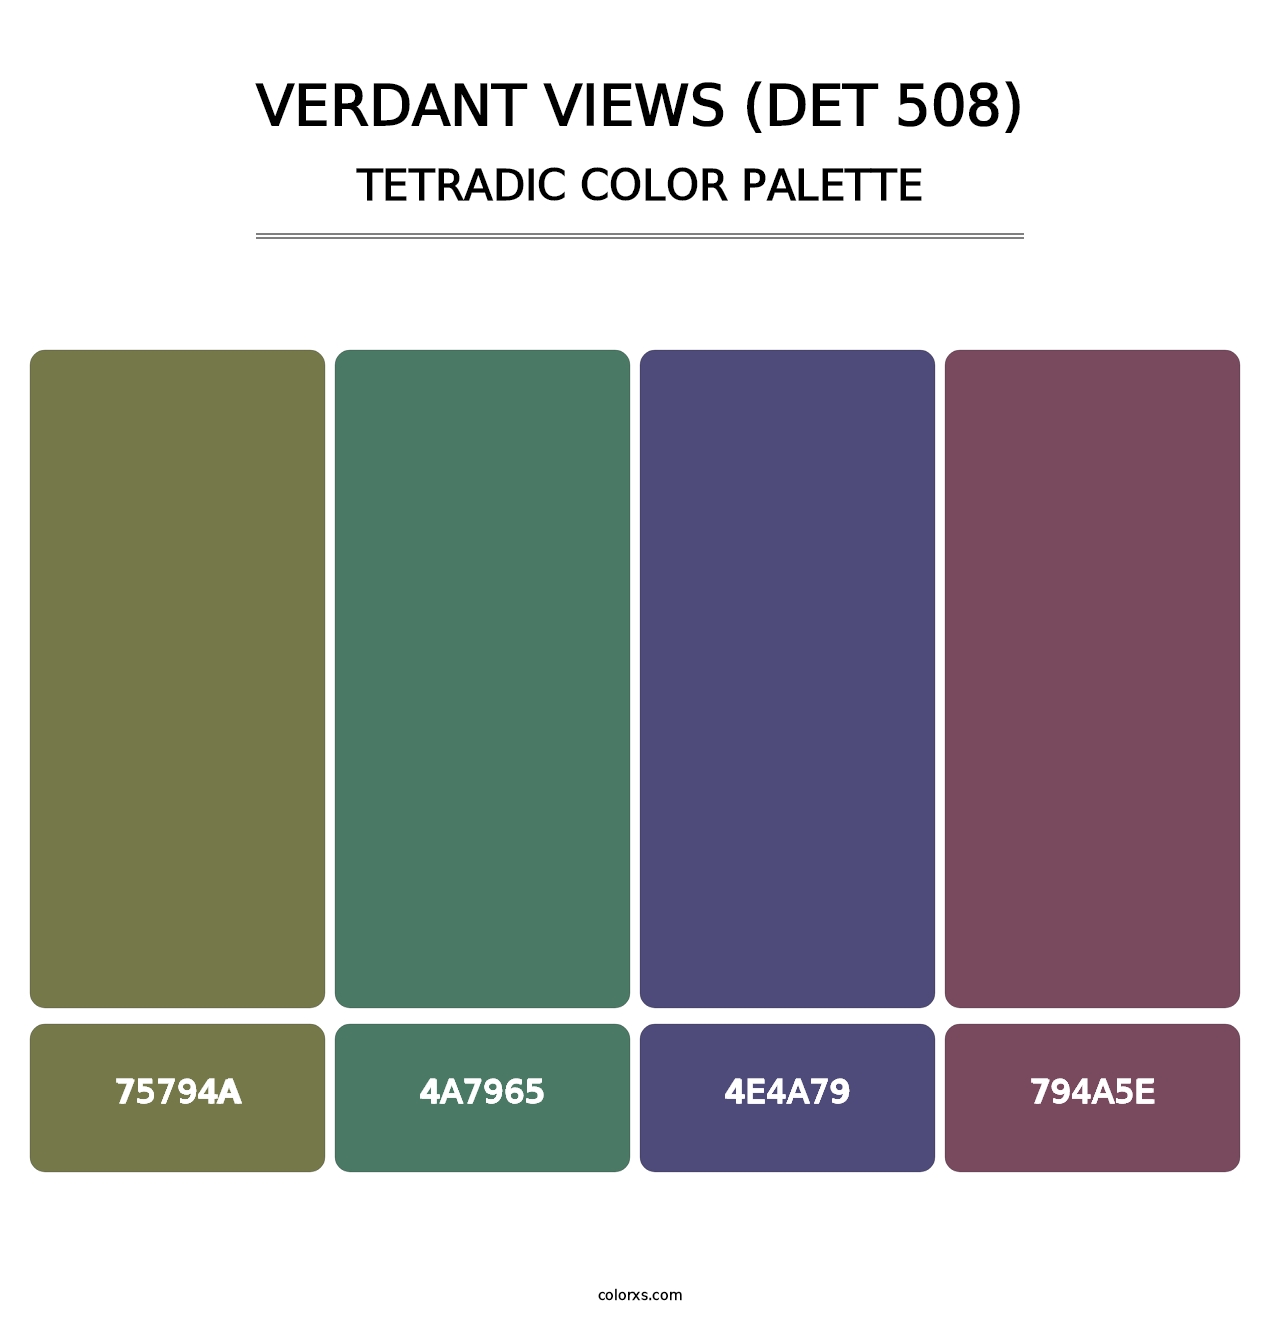 Verdant Views (DET 508) - Tetradic Color Palette